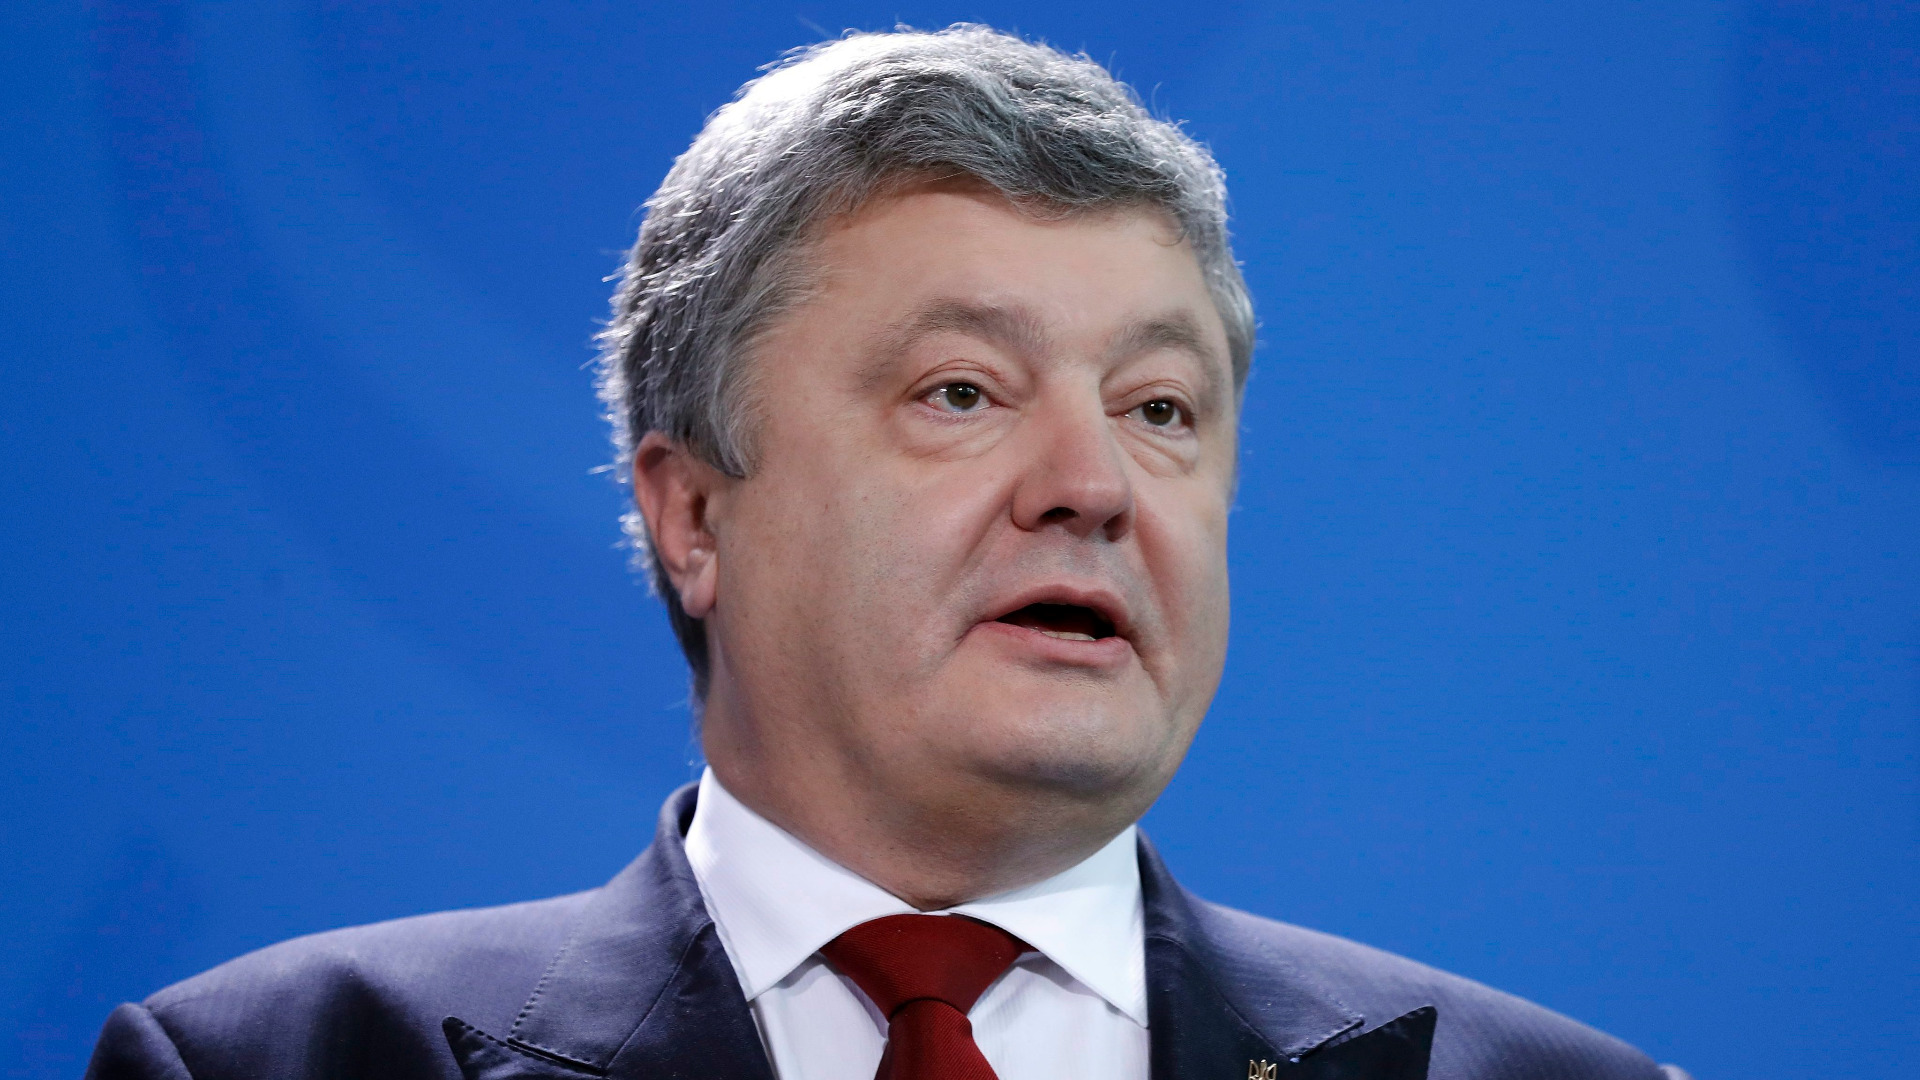 След разговори с европейските партньори украинският президент Петро Порошенко допусна